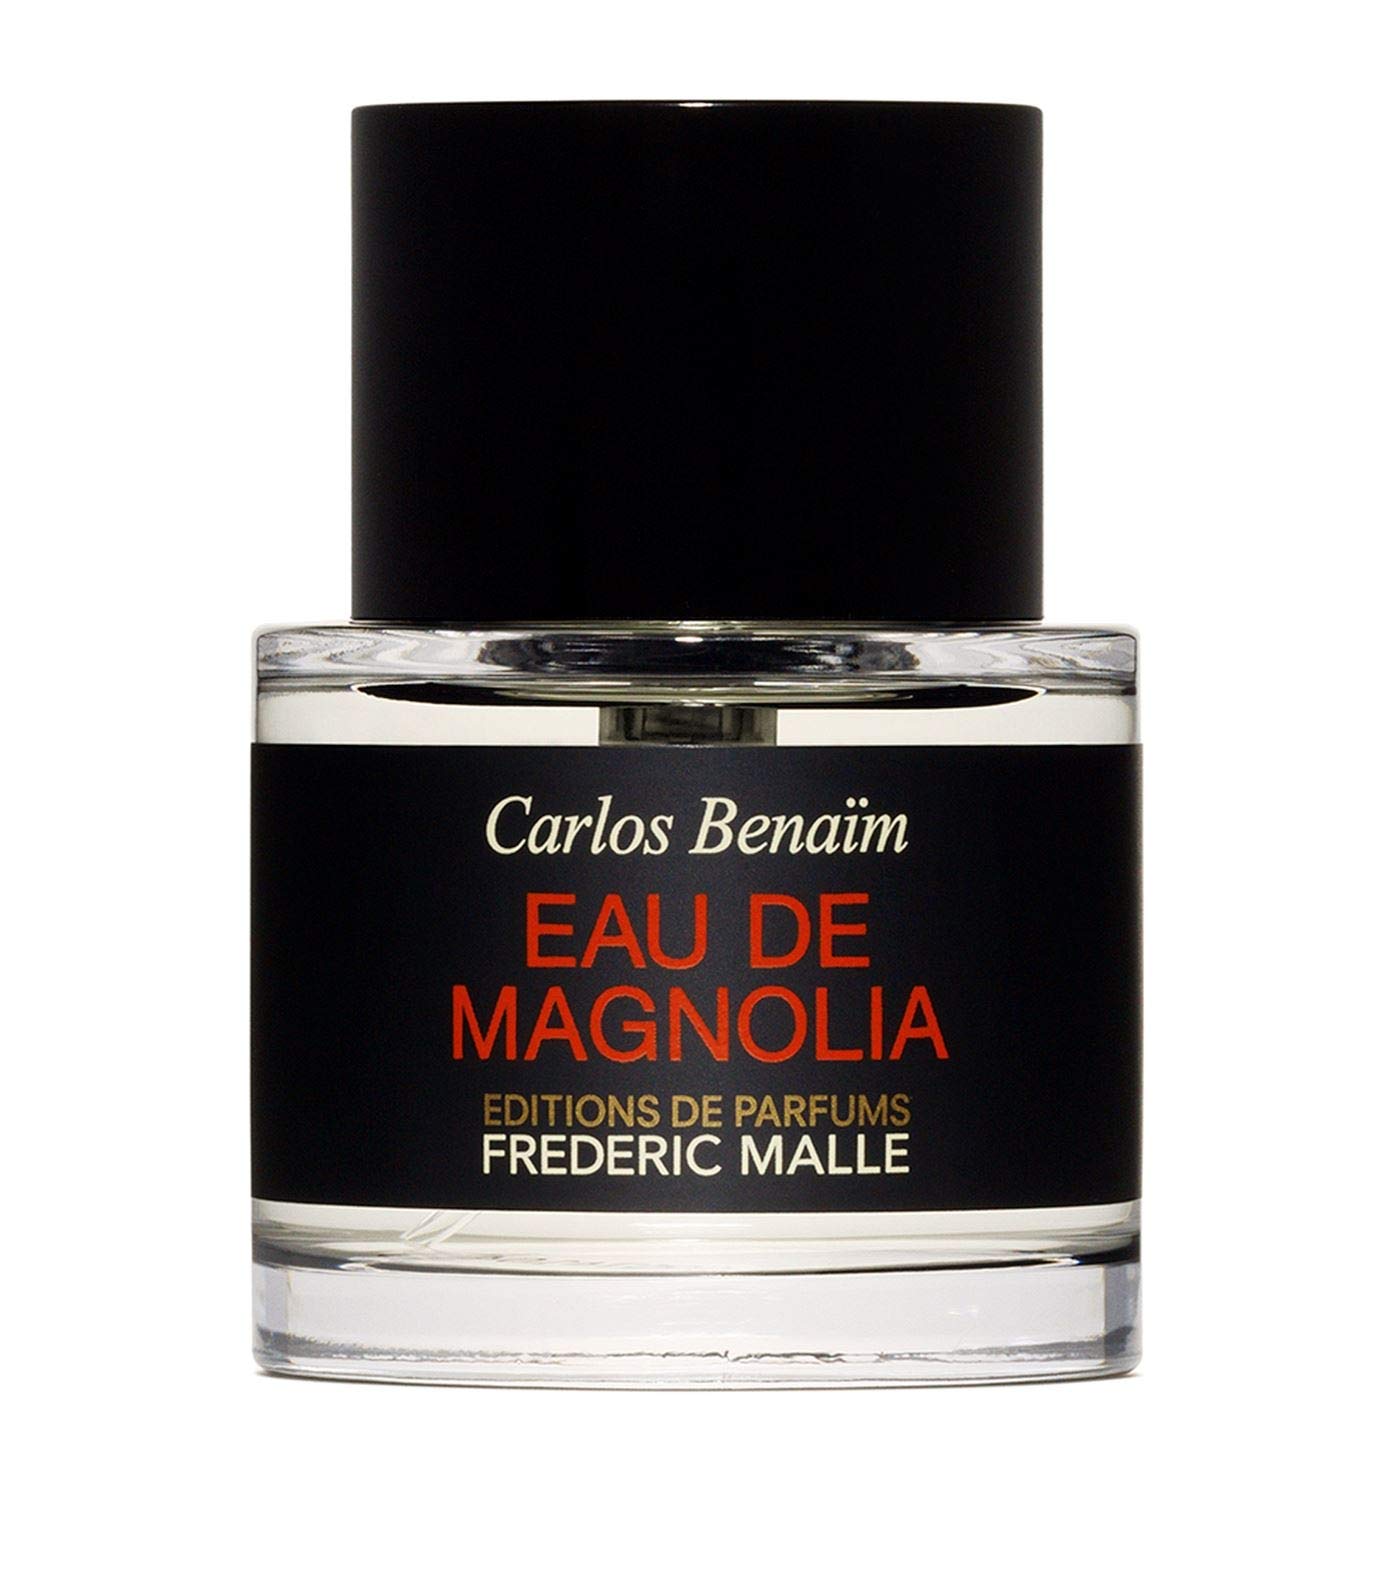 Editions de Parfums Frederic Malle - Eau de Magnolia.